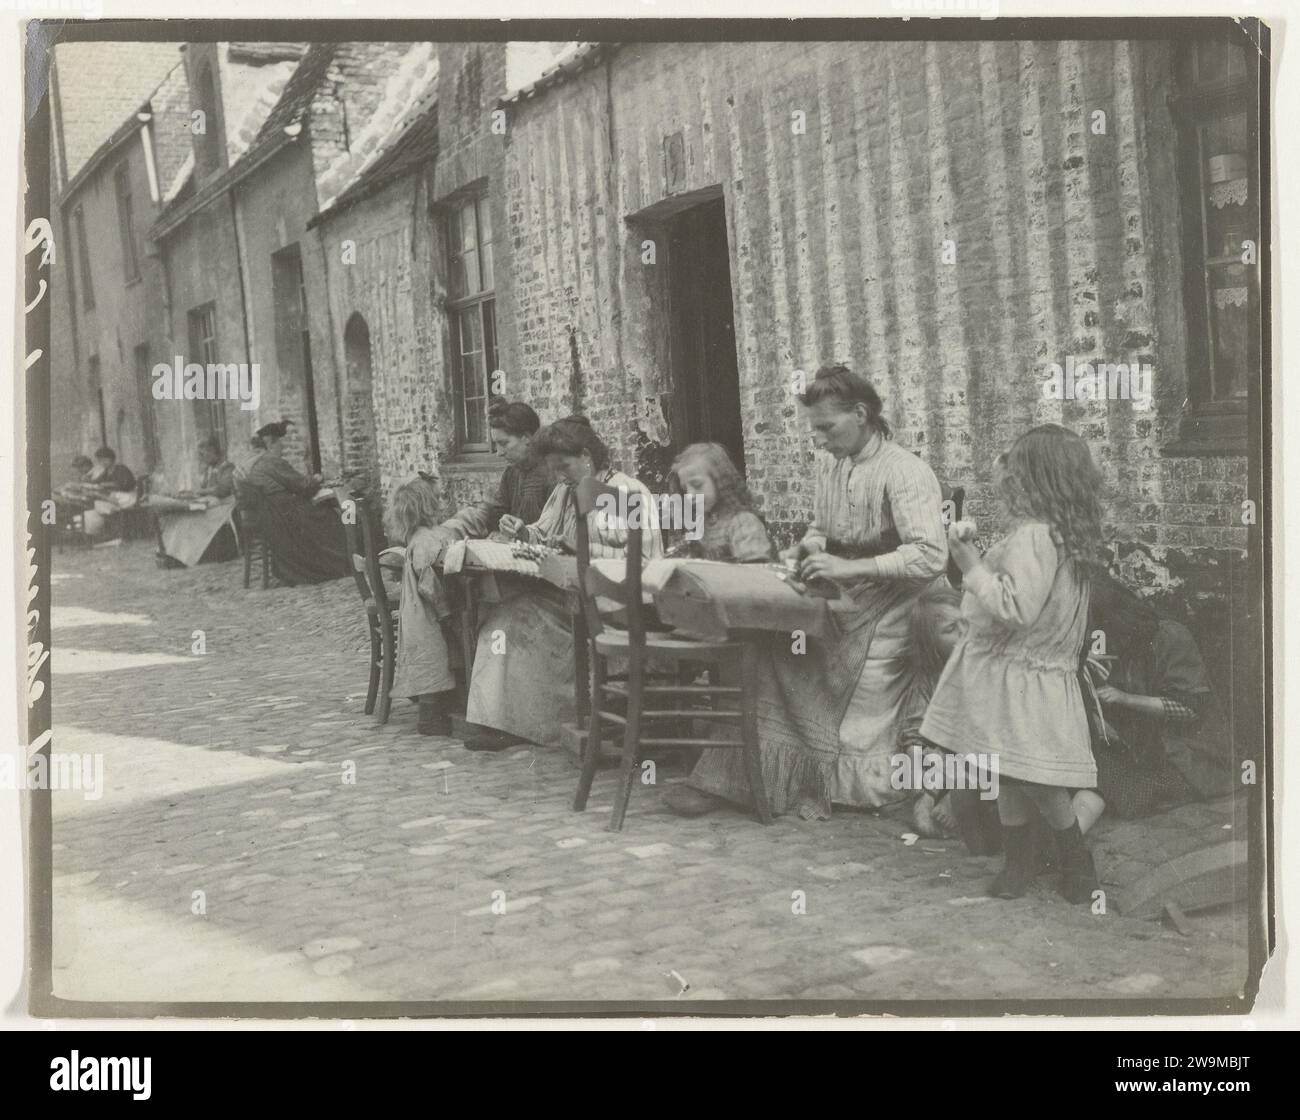 Rue où les femmes sont sur la dentelle, vers 1900 photographie Belgique (éventuellement) support photographique. Papier gélatine argent impression dentelle Belgique Banque D'Images